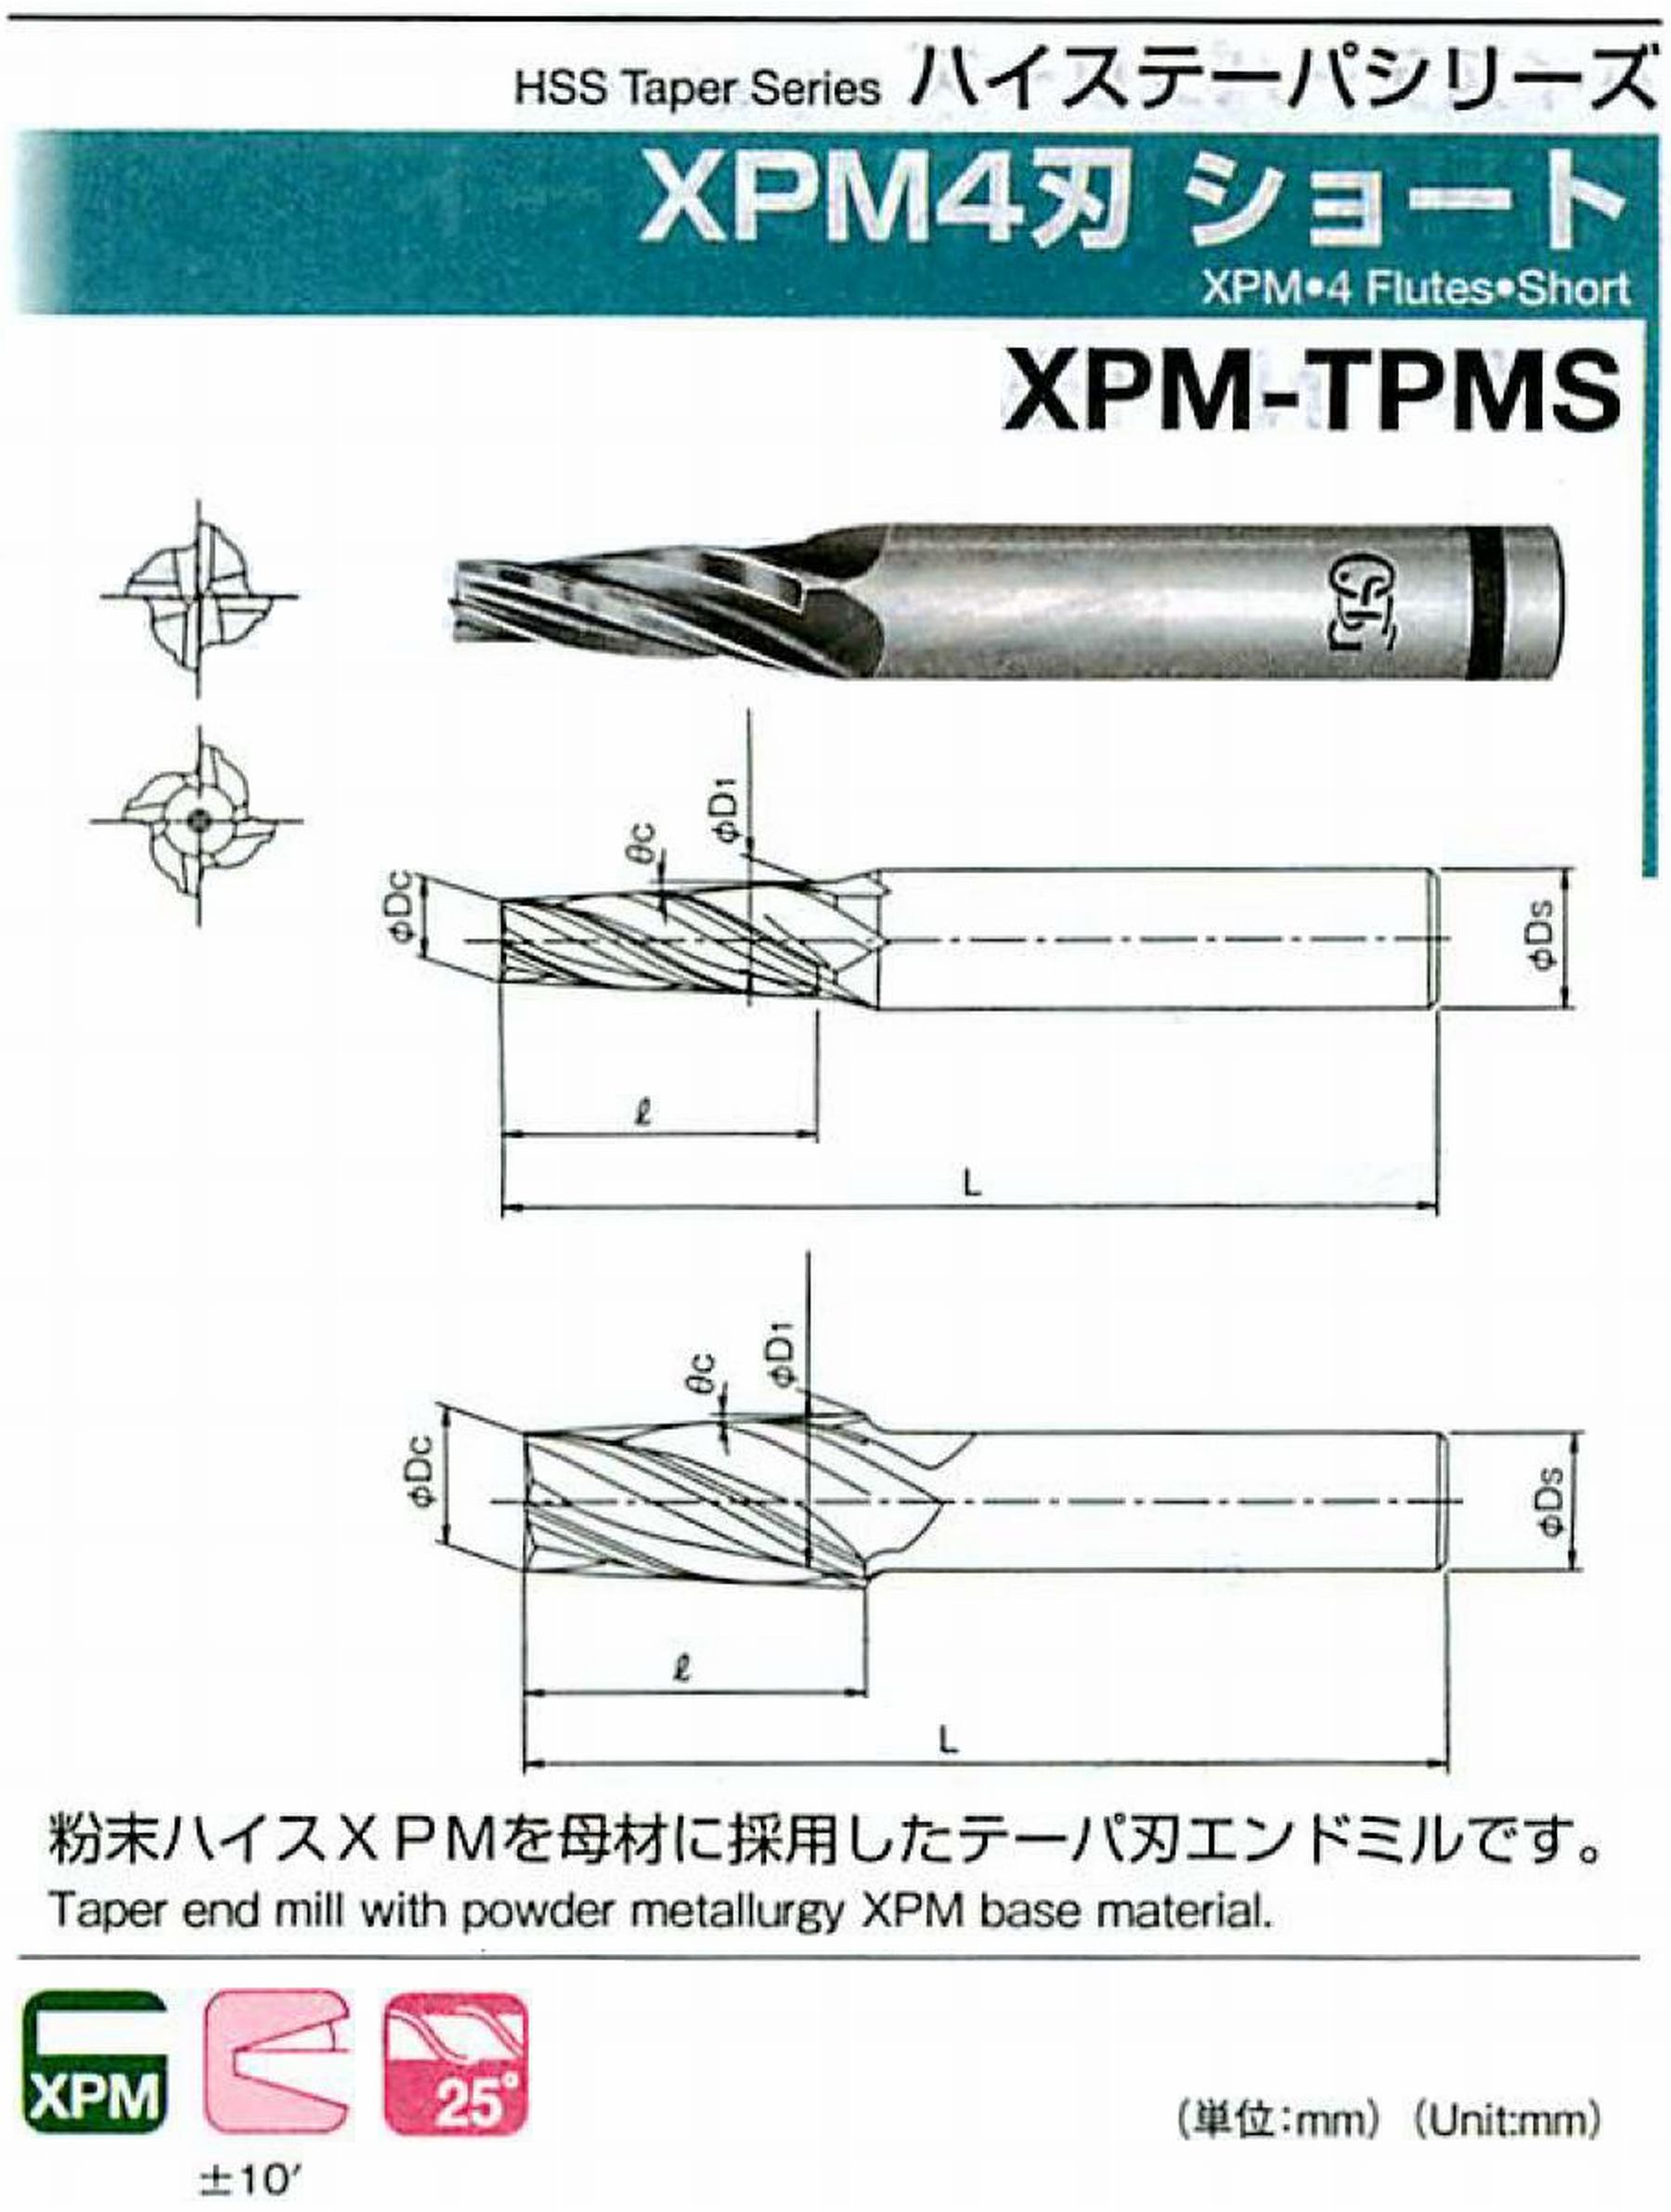 オーエスジー/OSG XPM4刃 ショート XPM-TPMS 外径×刃部テーパ半角2×0.5°全長54 刃長10 シャンク径6mm 大端径2.17